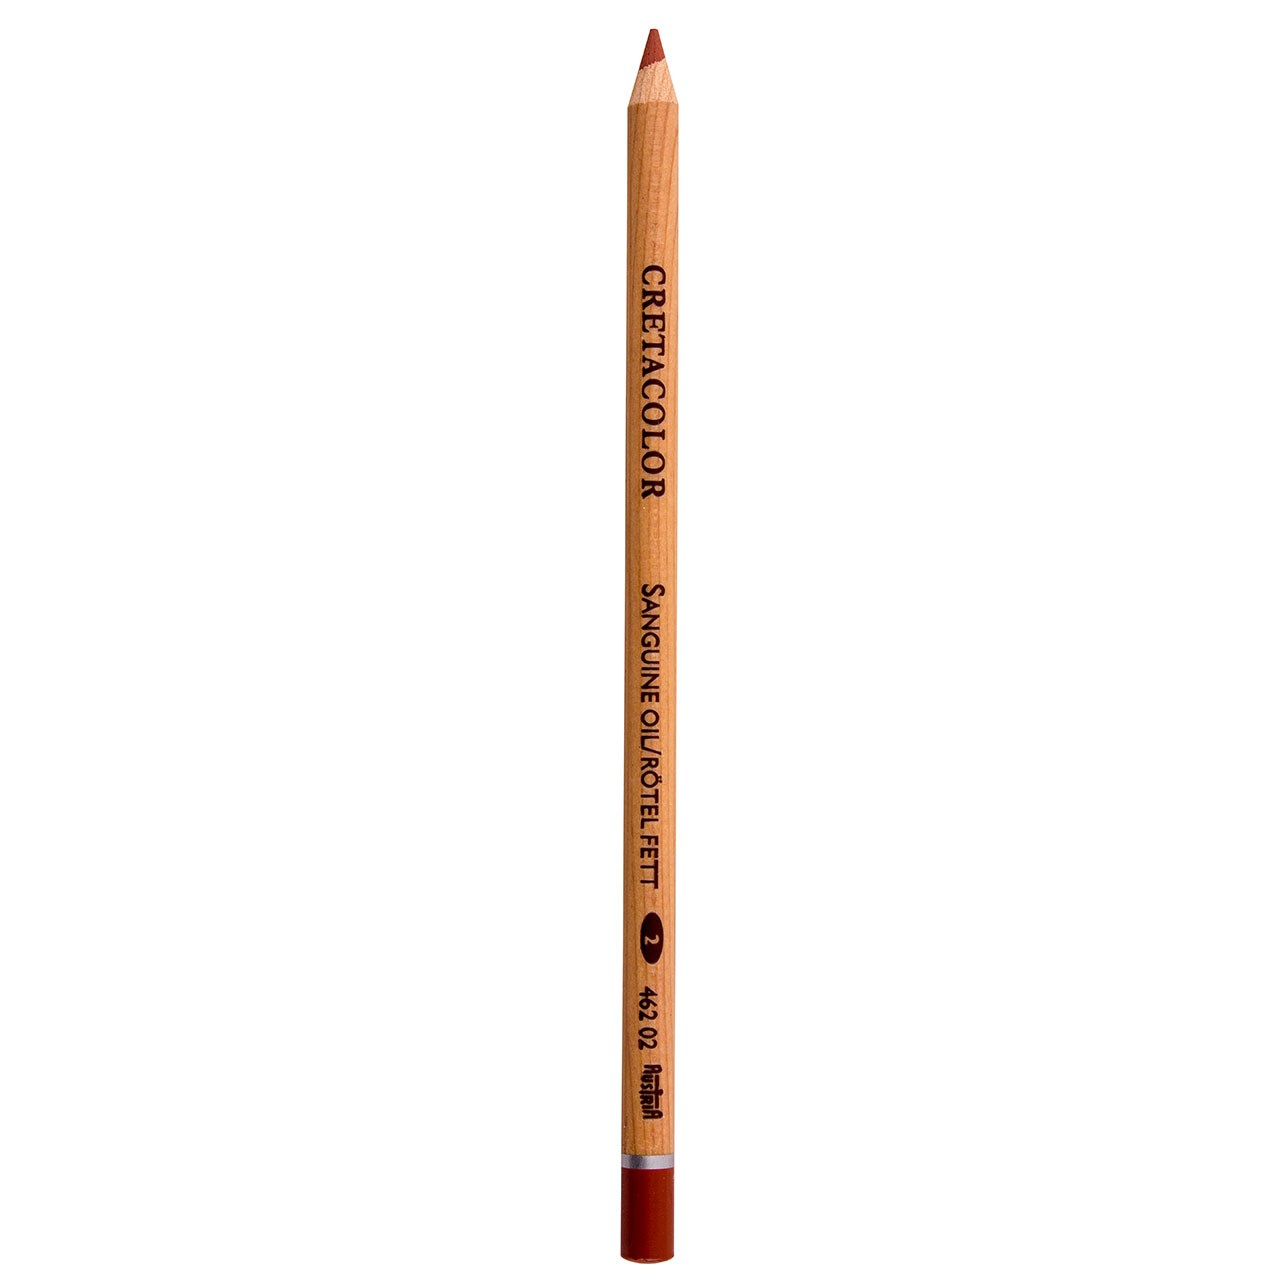 مداد کنته روغنی کرتاکالر کد 46202 بسته سه عددی